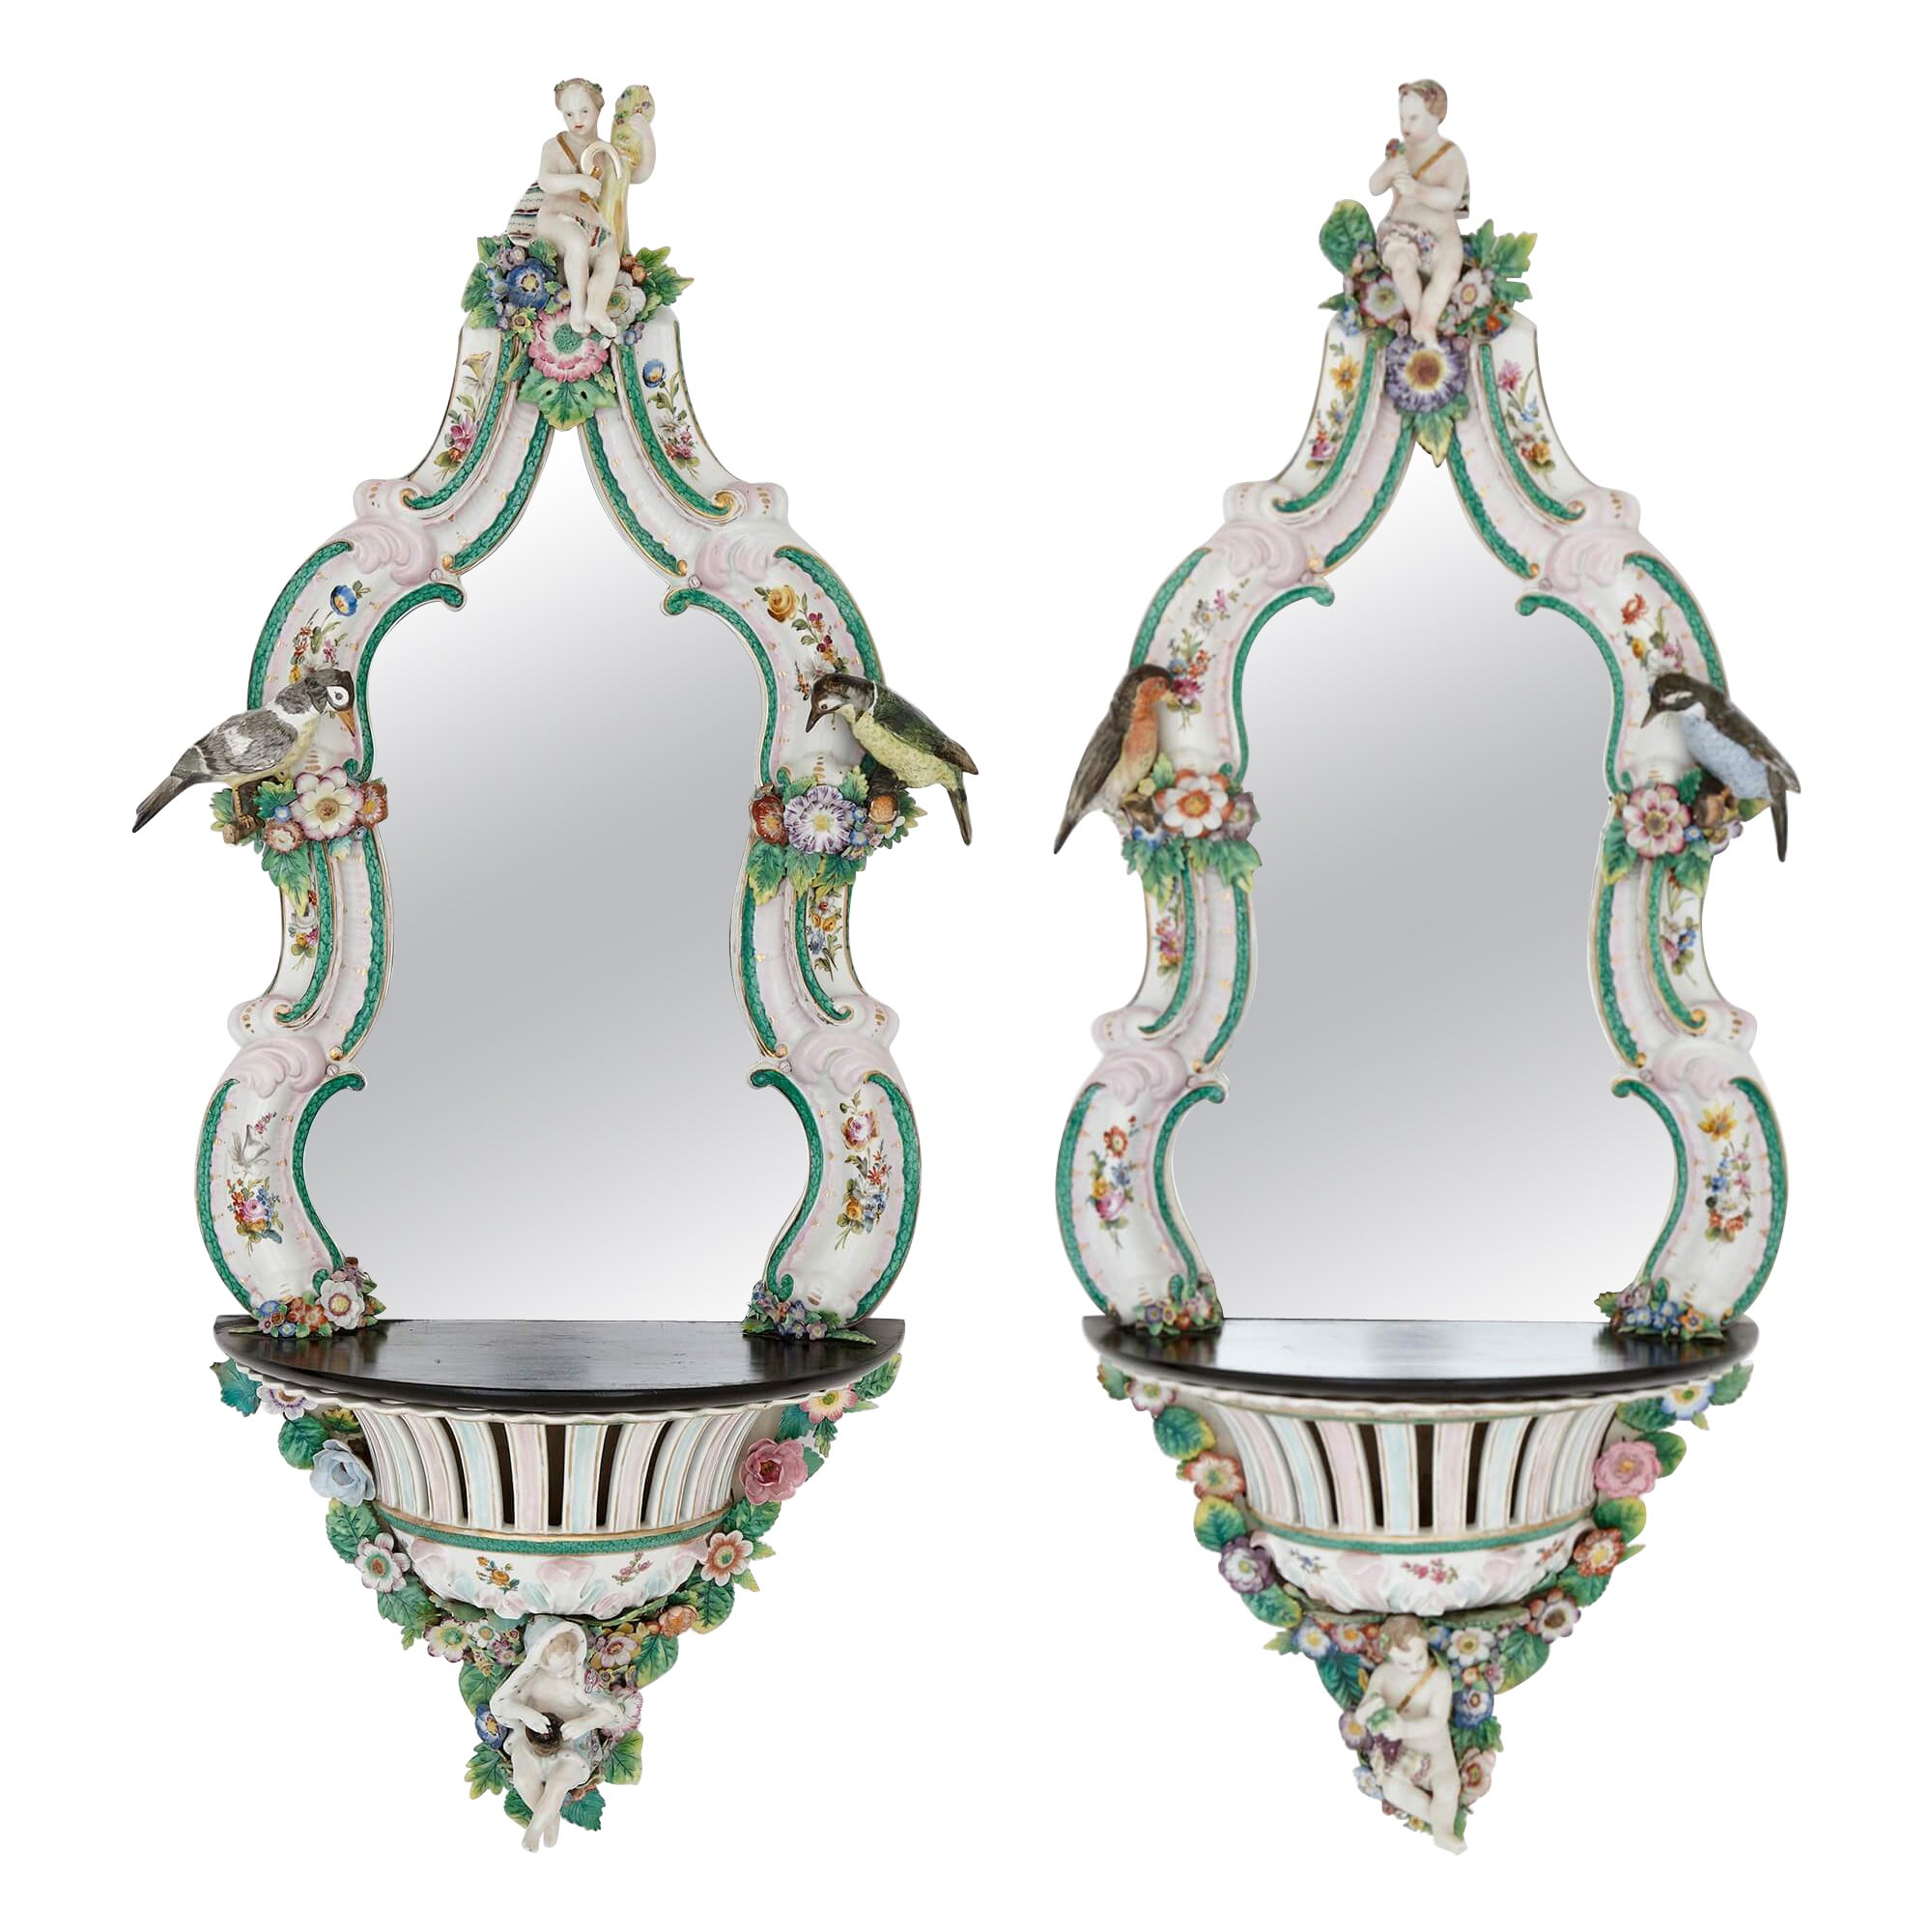 Paire de supports muraux miroirs en porcelaine et bois ébénisé de style Meissen